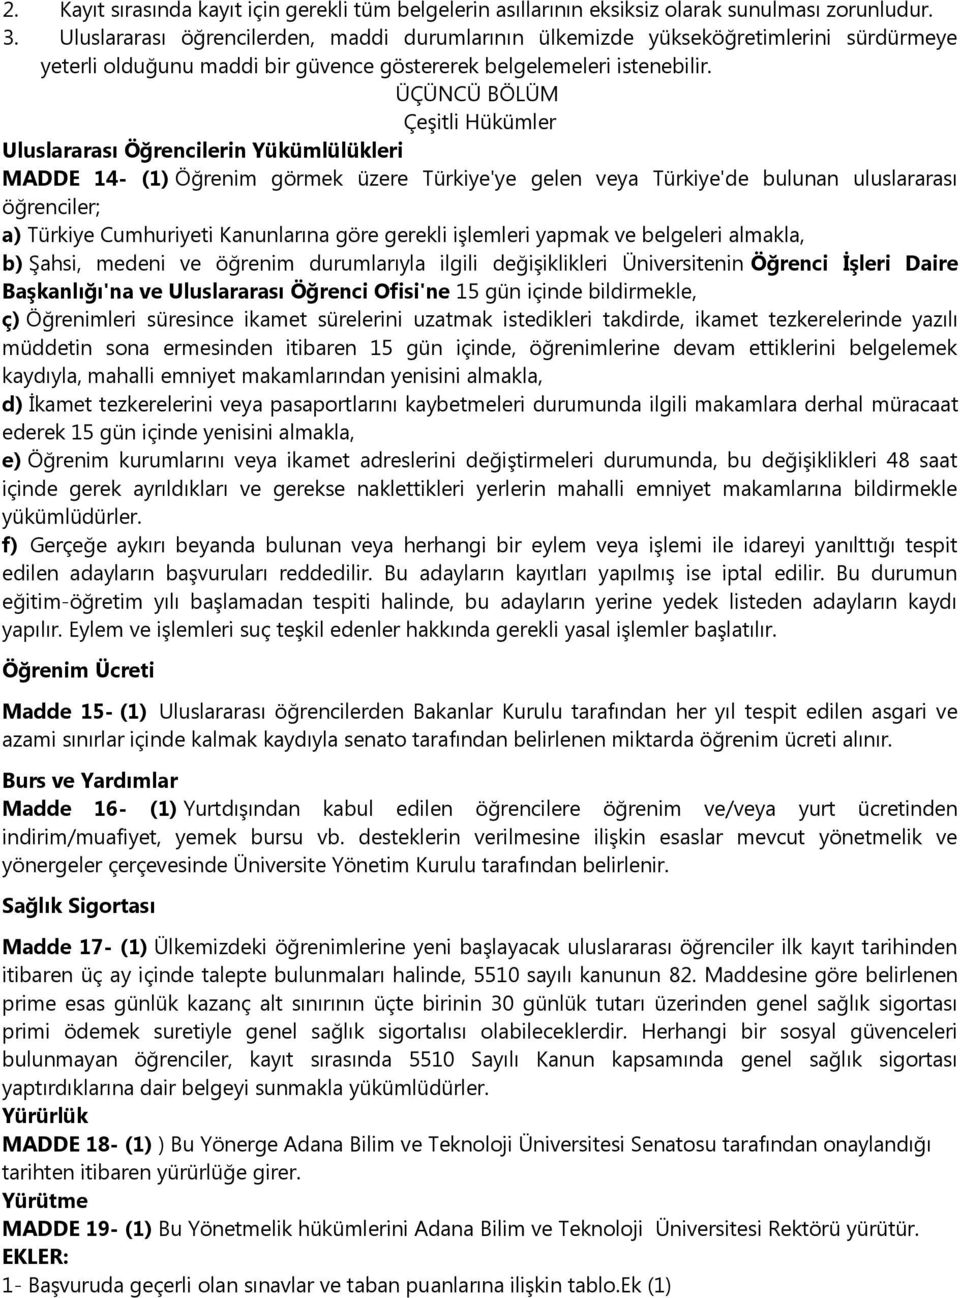 ÜÇÜNCÜ BÖLÜM Çeşitli Hükümler Uluslararası Öğrencilerin Yükümlülükleri MADDE 14- (1) Öğrenim görmek üzere Türkiye'ye gelen veya Türkiye'de bulunan uluslararası öğrenciler; a) Türkiye Cumhuriyeti